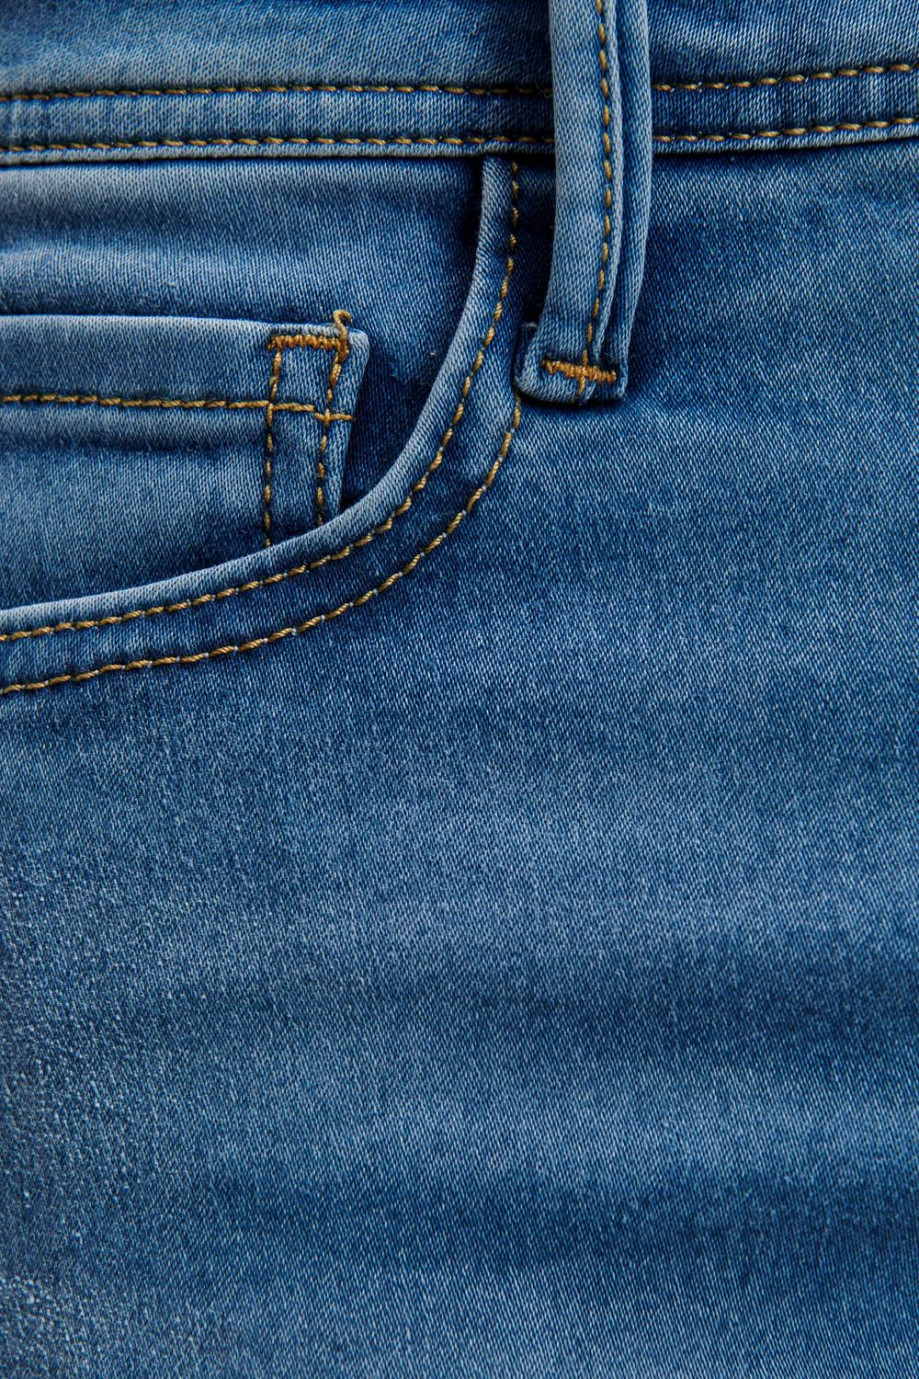 Jean tiro bajo súper skinny azul medio con botón en la cintura